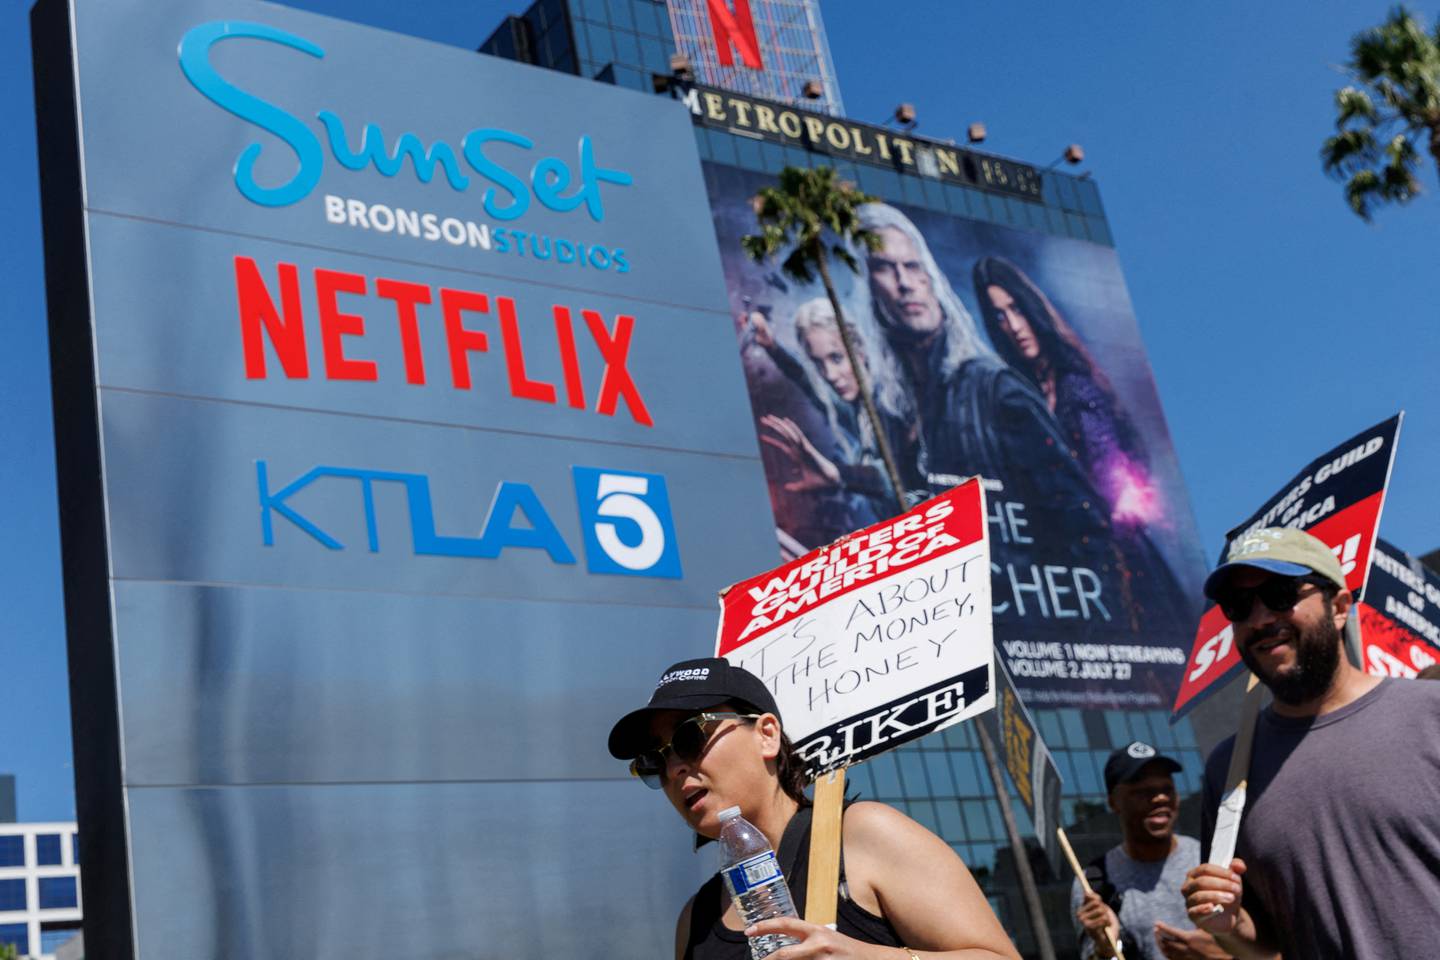 Den amerikanske manusforfatterforeningen,  Writers Guild of America (WGA), deltar også i streiken. Her foran Netflix sitt kontor i Los Angeles 12 juli. På et av skiltene står det: "It's about the money, honey".